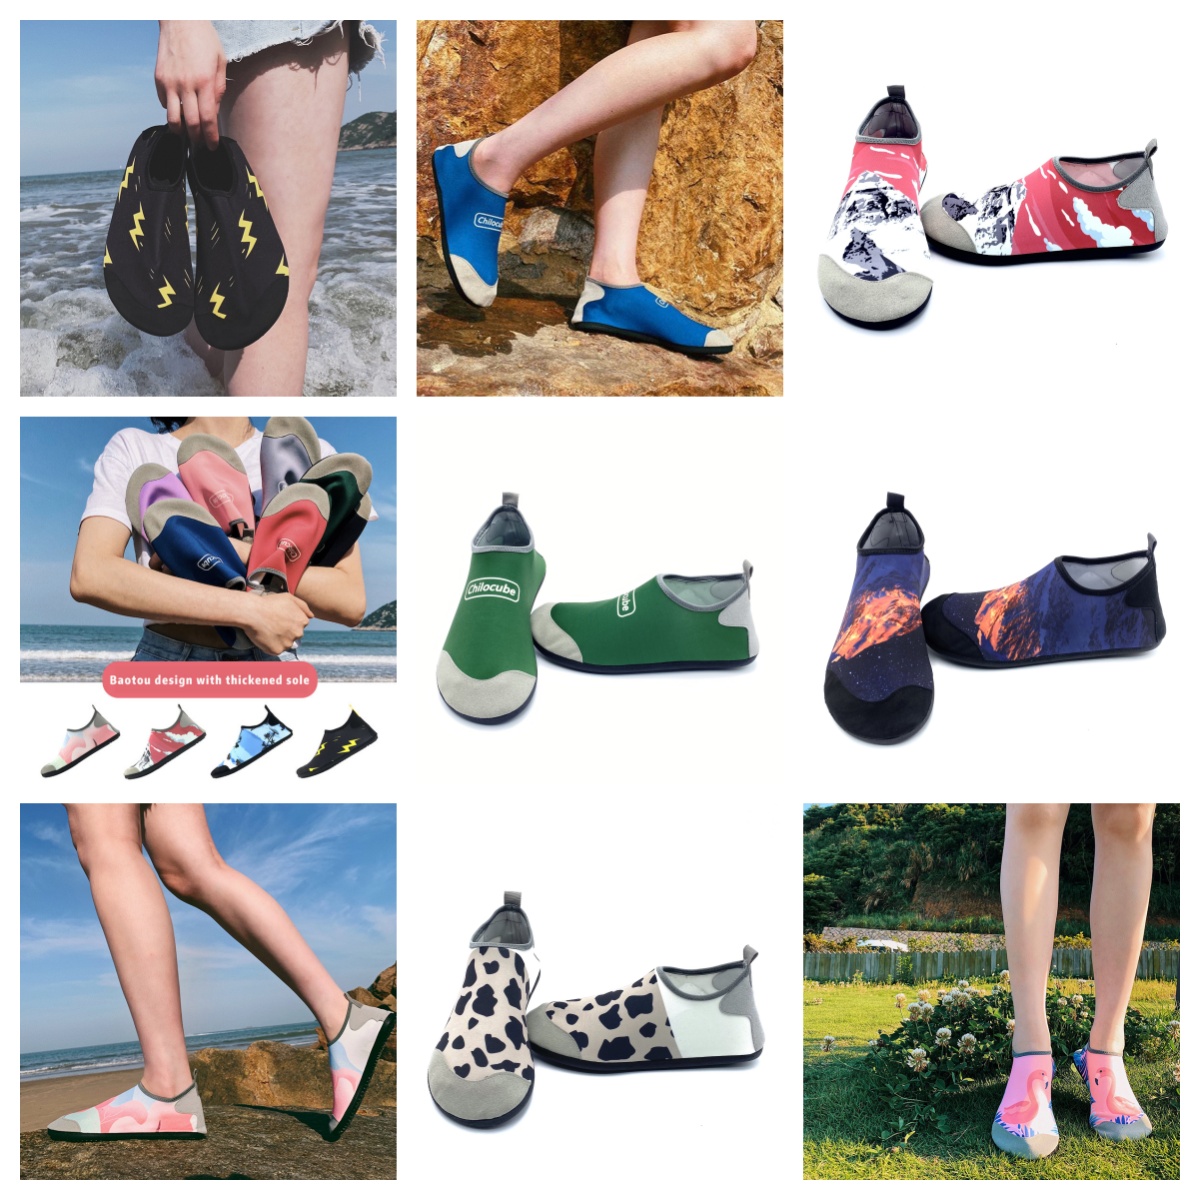 Sapatos atléticos gai sandália mulher wading sapato descalço sapatos esportes esportivos verdes praias ao ar livre sandália caseche creek shee tamanho eur 35-46